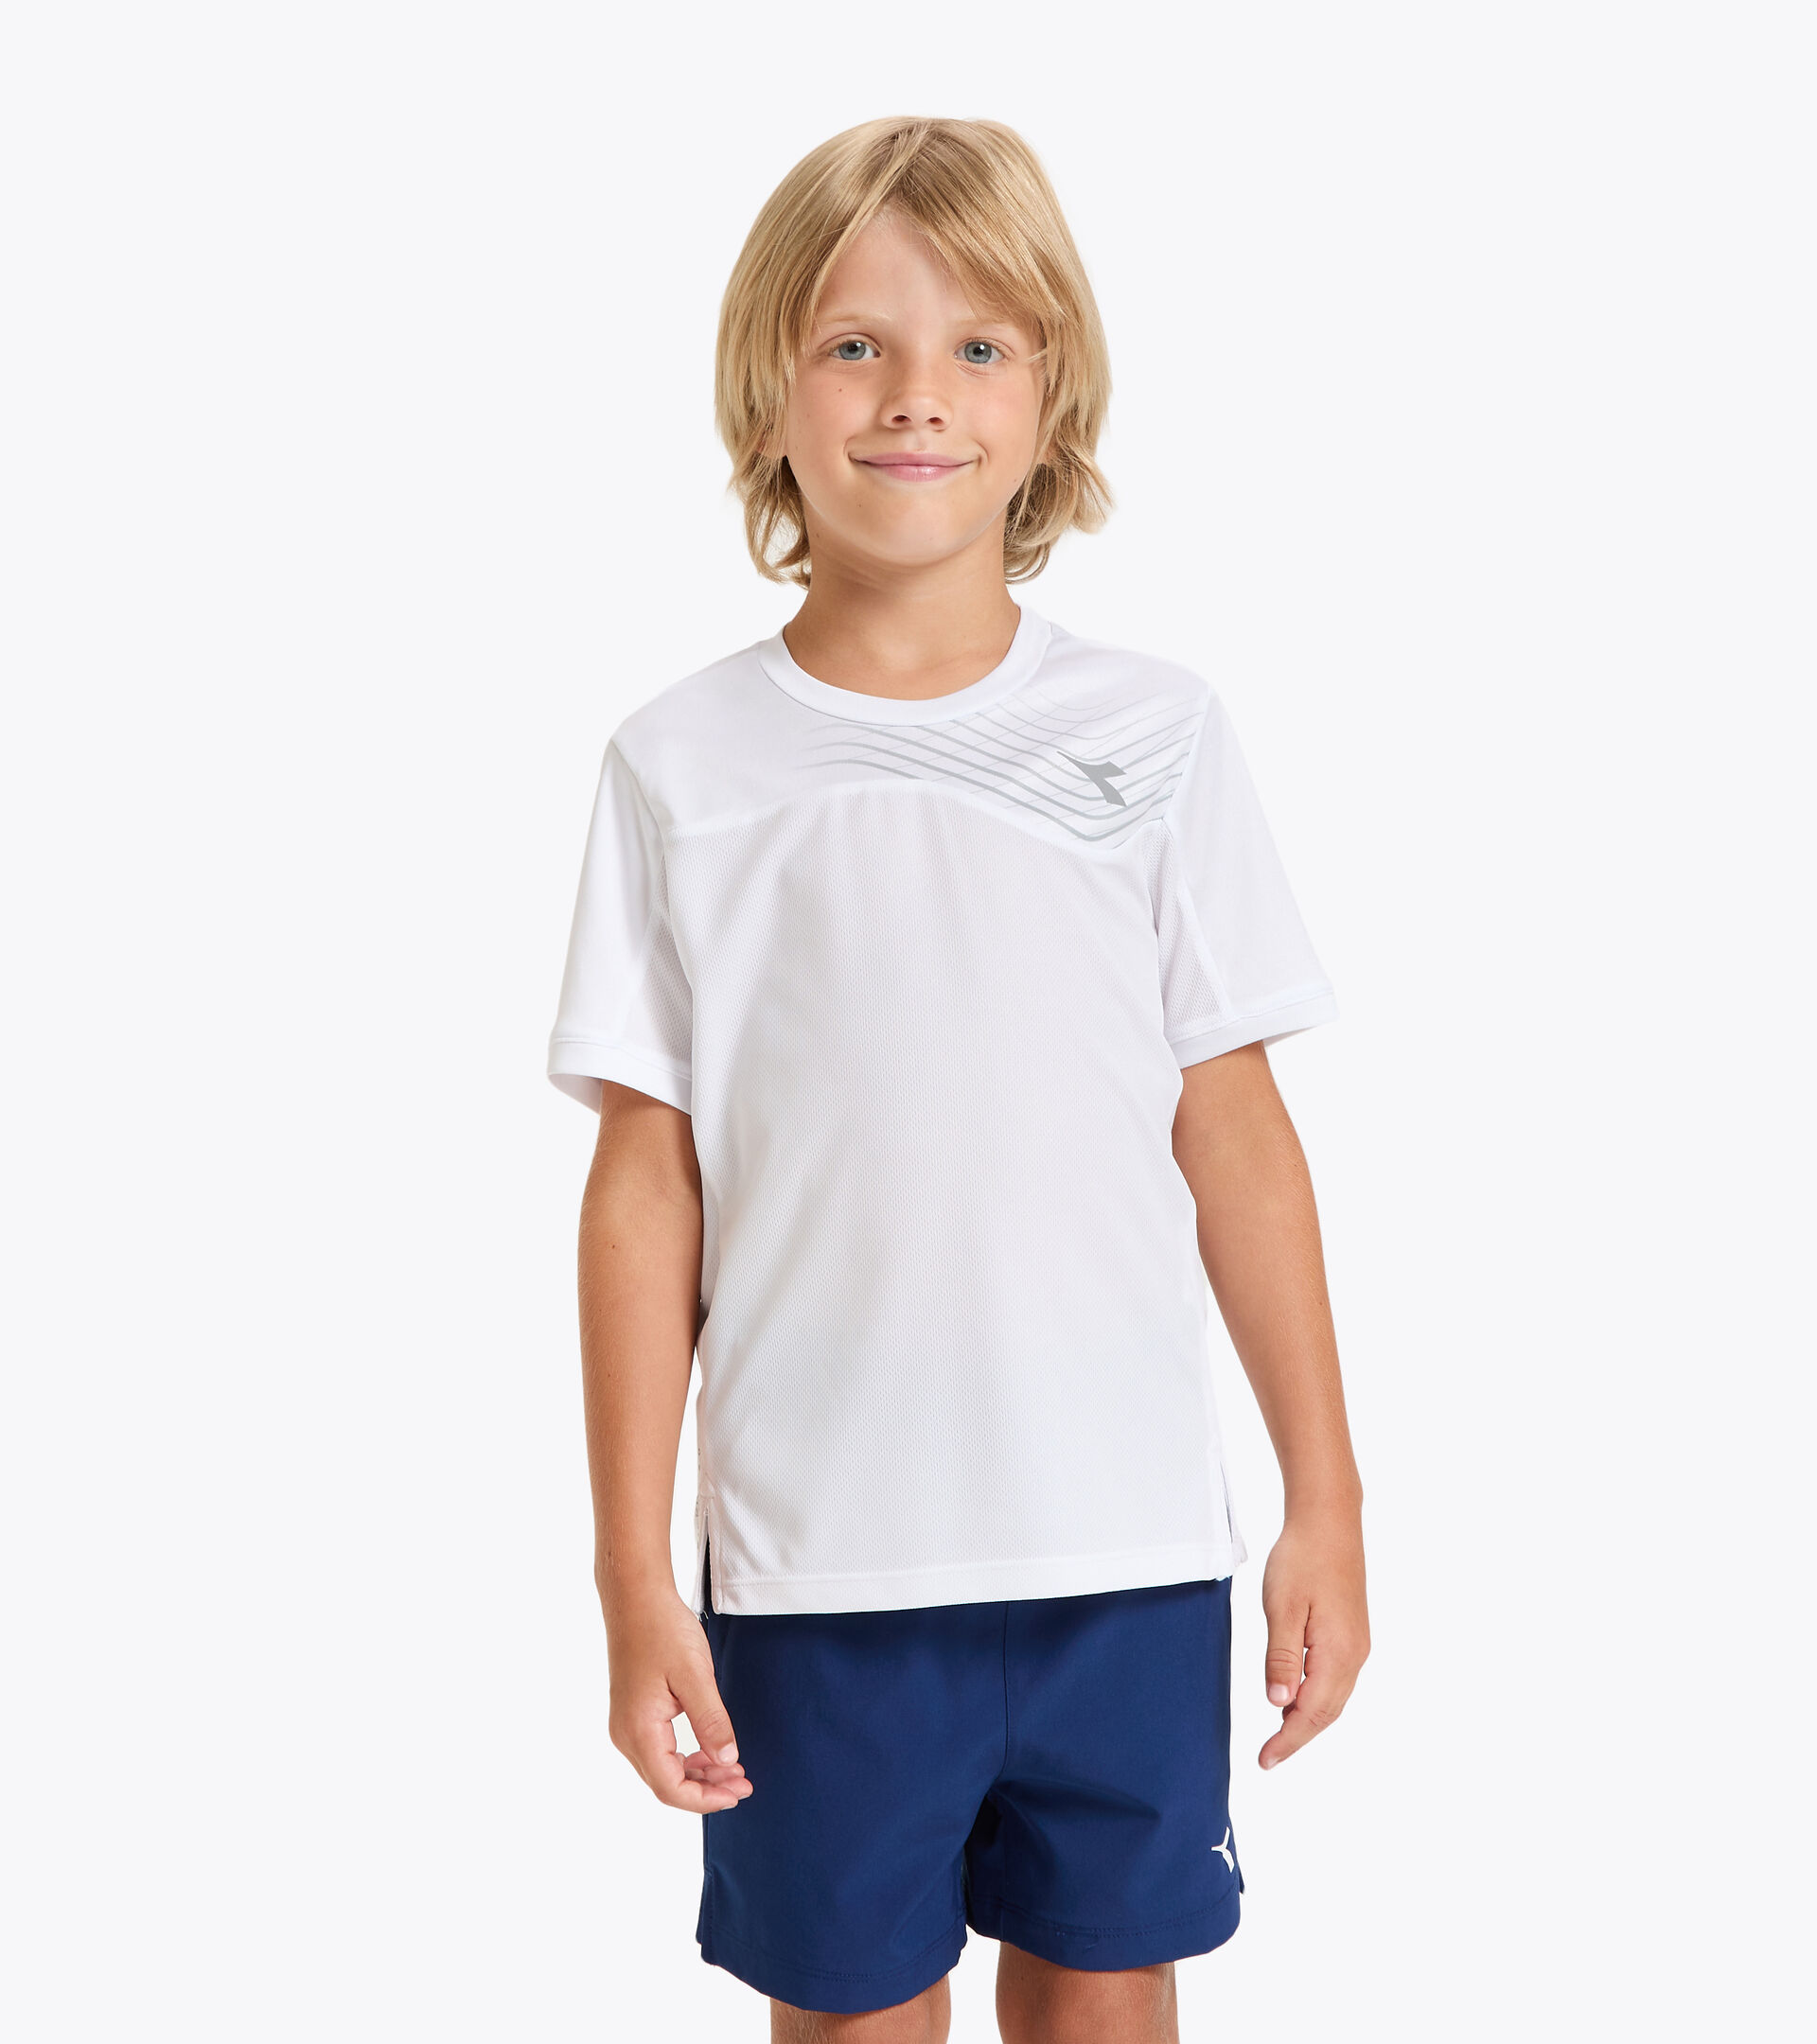 Tennis-T-Shirt - Junior J. T-SHIRT COURT STRAHLEND WEISSE - Diadora